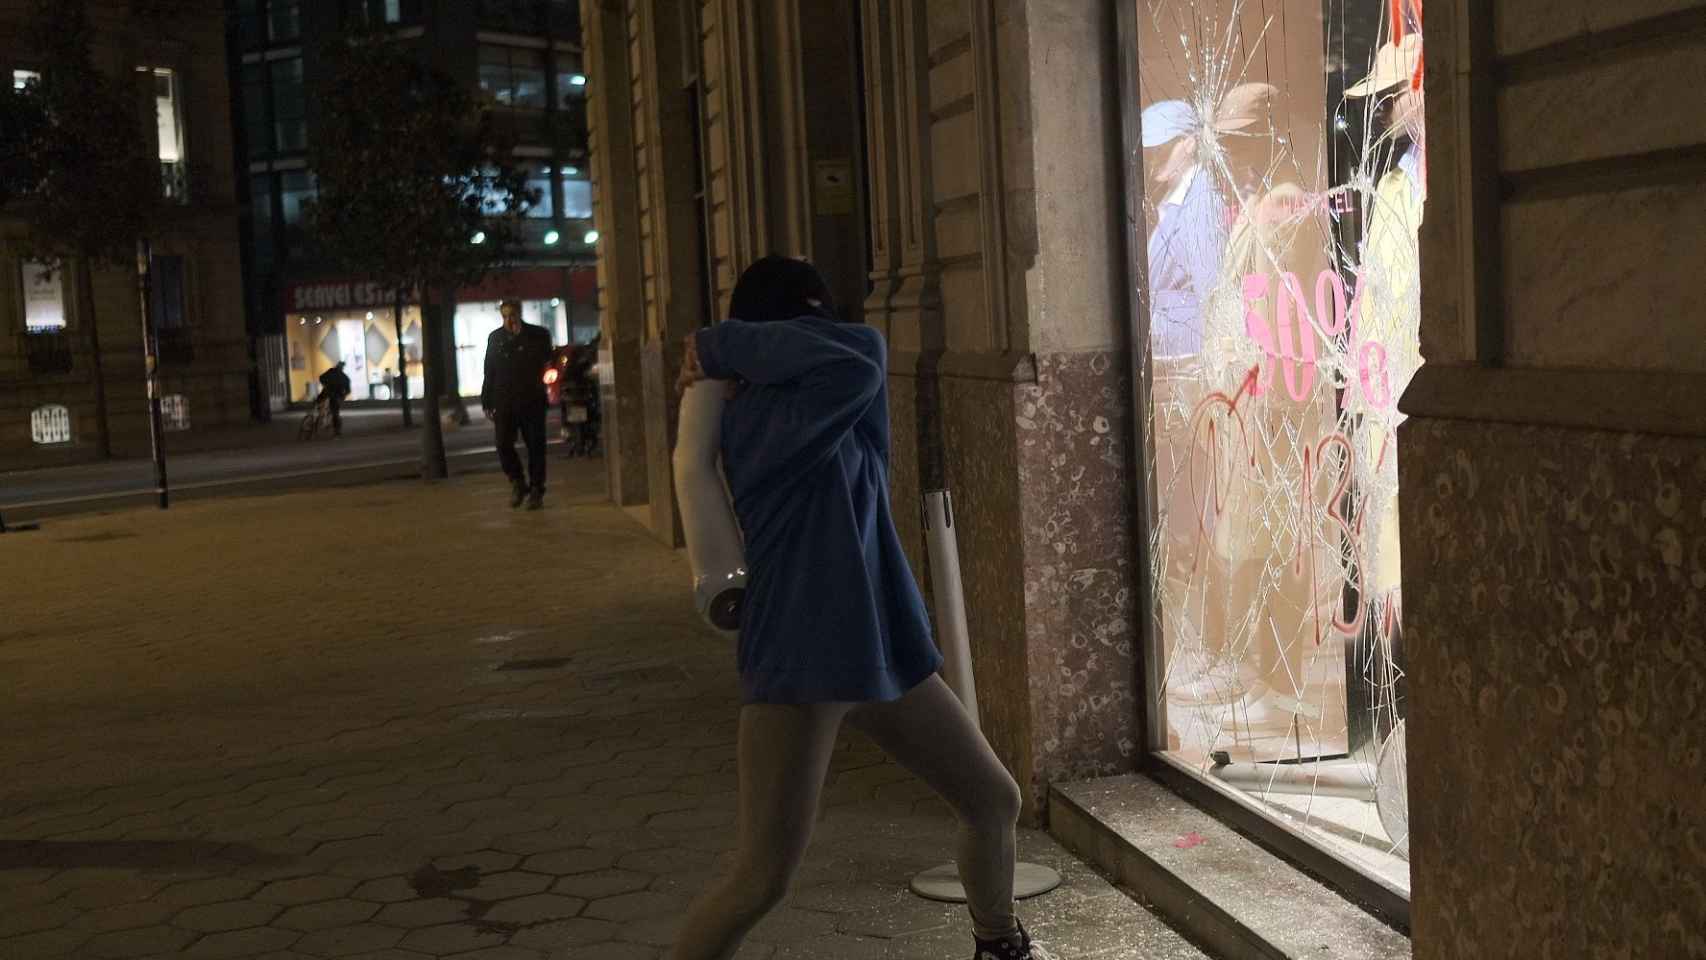 Un joven revienta el escaparate de una tienda / PABLO MIRANZO - MA